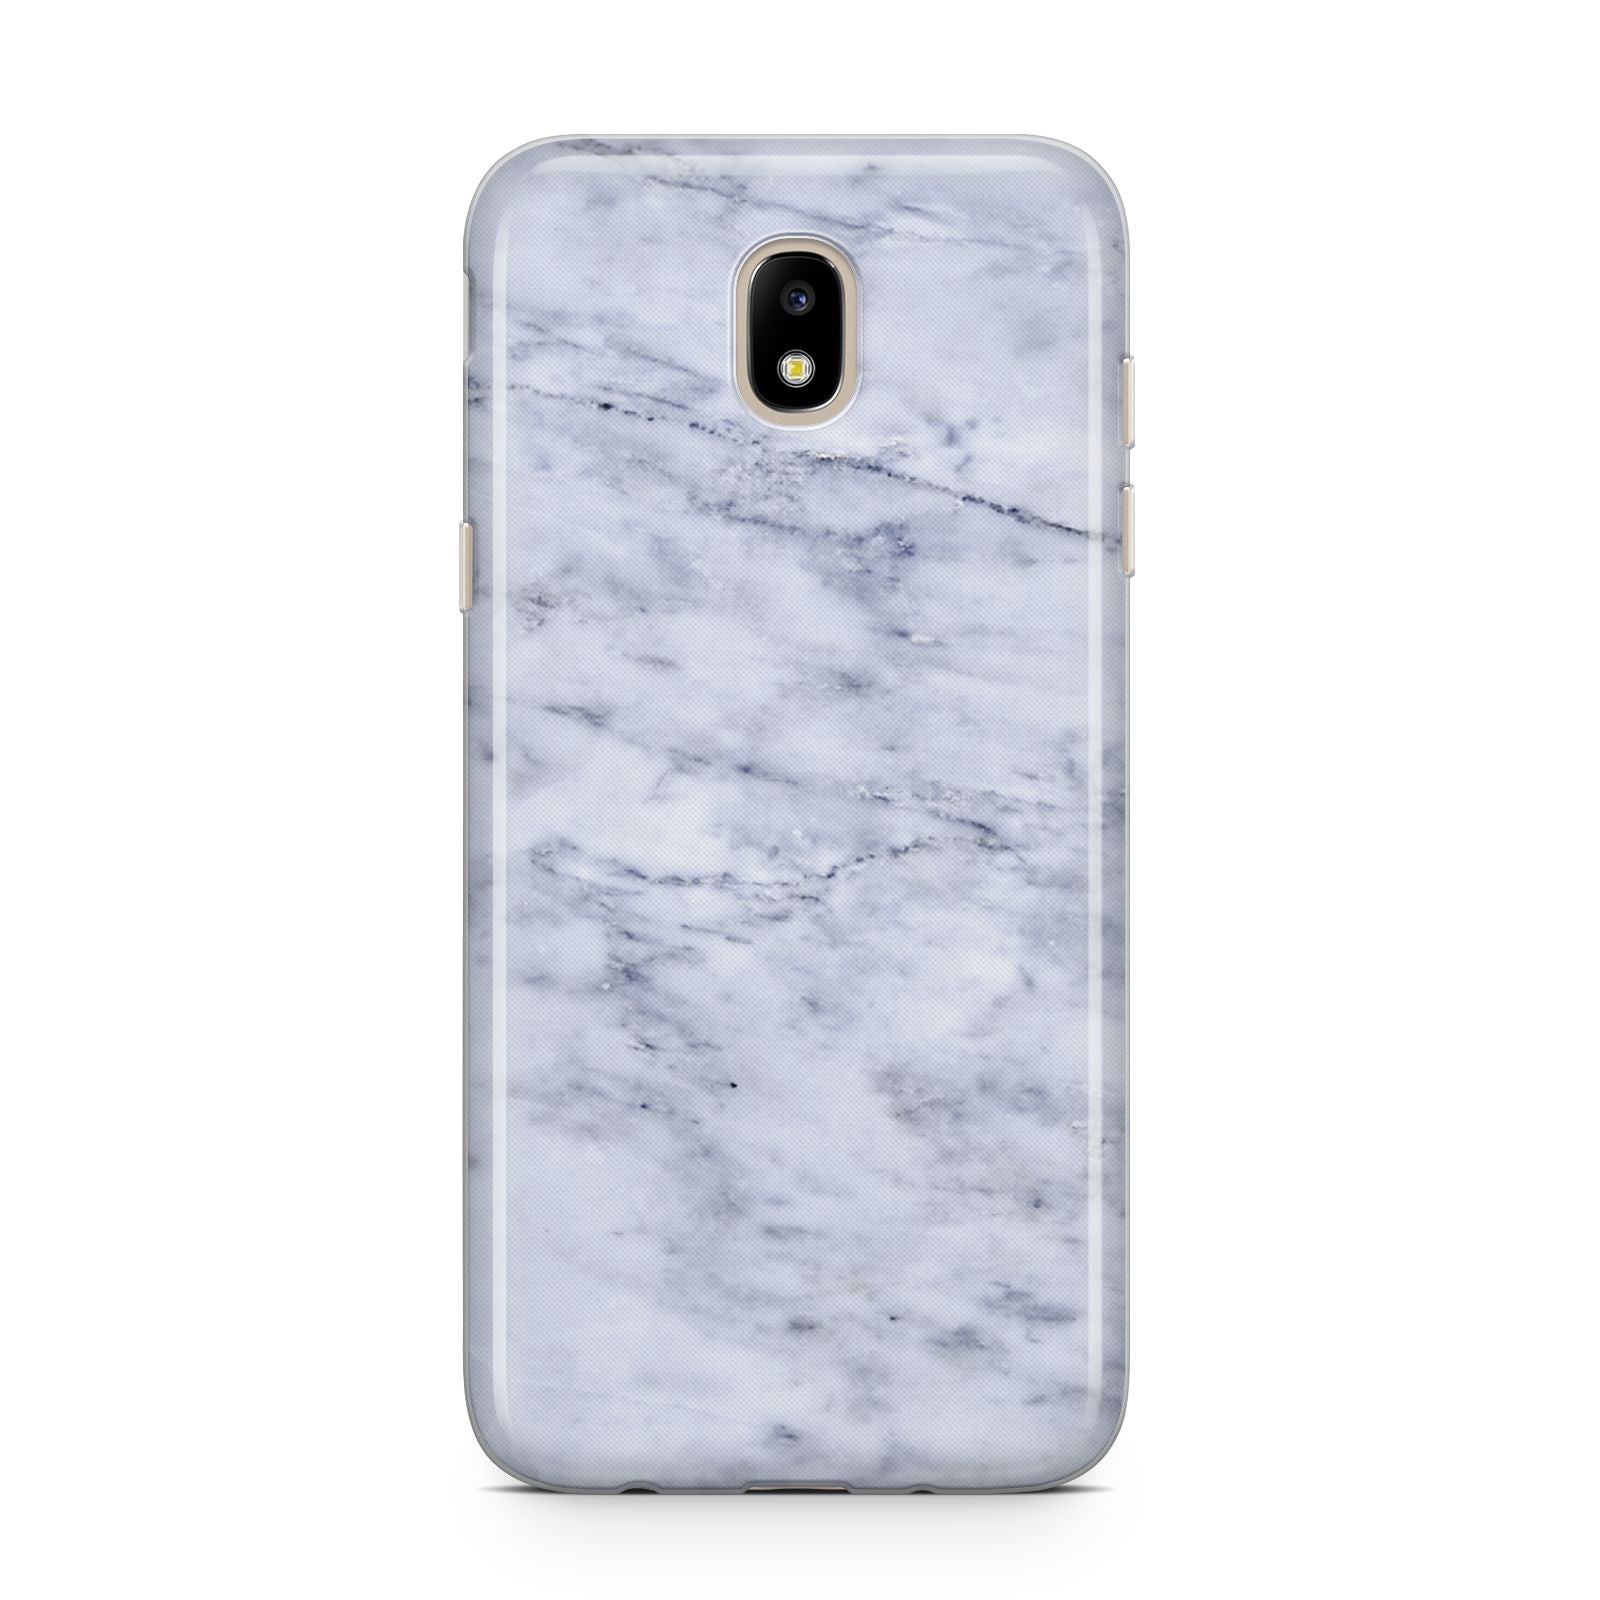 Faux Carrara Marble Print Samsung J5 2017 Case